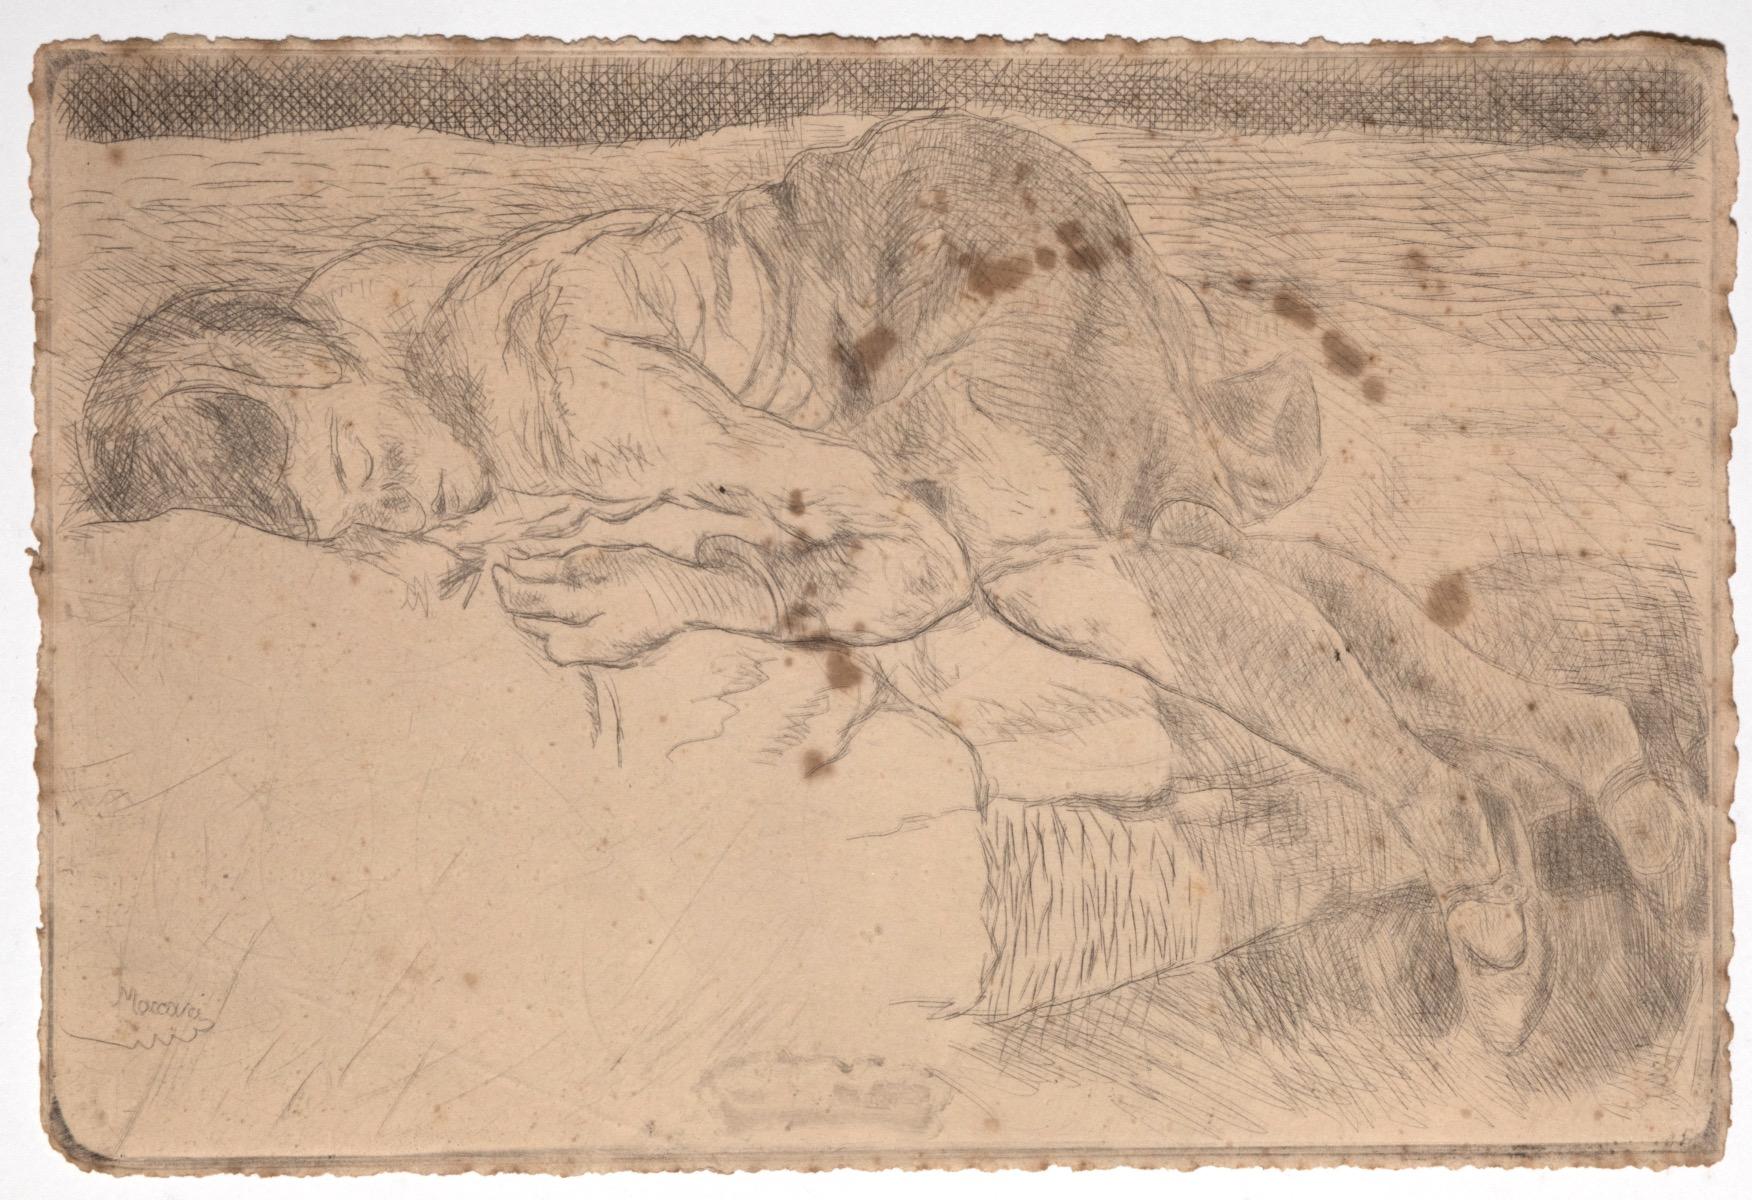 Sleeping Figure ist ein originelles modernes Kunstwerk des italienischen Künstlers Mino Maccari (Siena, 1898 - Rom, 1989) aus dem Jahr 1925.

Original-Radierung auf Elfenbeinpapier. 

Ausgezeichnete Bedingungen. 

Dieses Werk wurde von dem